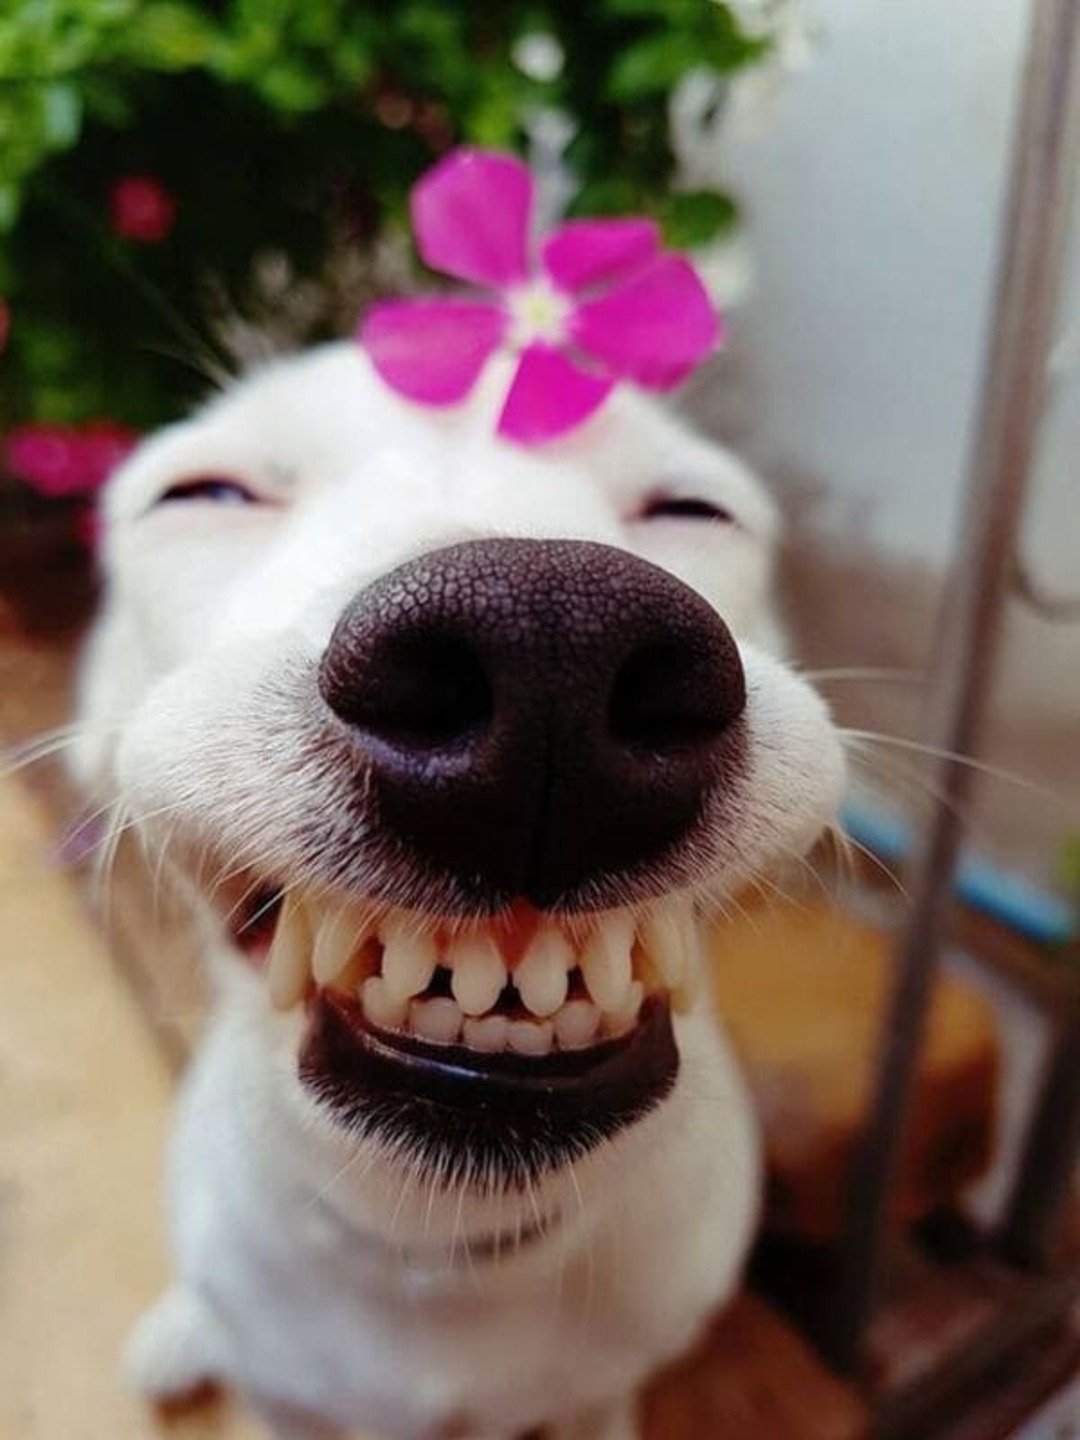 Nếu bạn muốn tìm kiếm những giây phút giải trí vui nhộn, hãy xem ngay hình ảnh chó hài hước này. Chúng sẽ làm cho bạn cười sảng khoái và cảm thấy tươi mới.